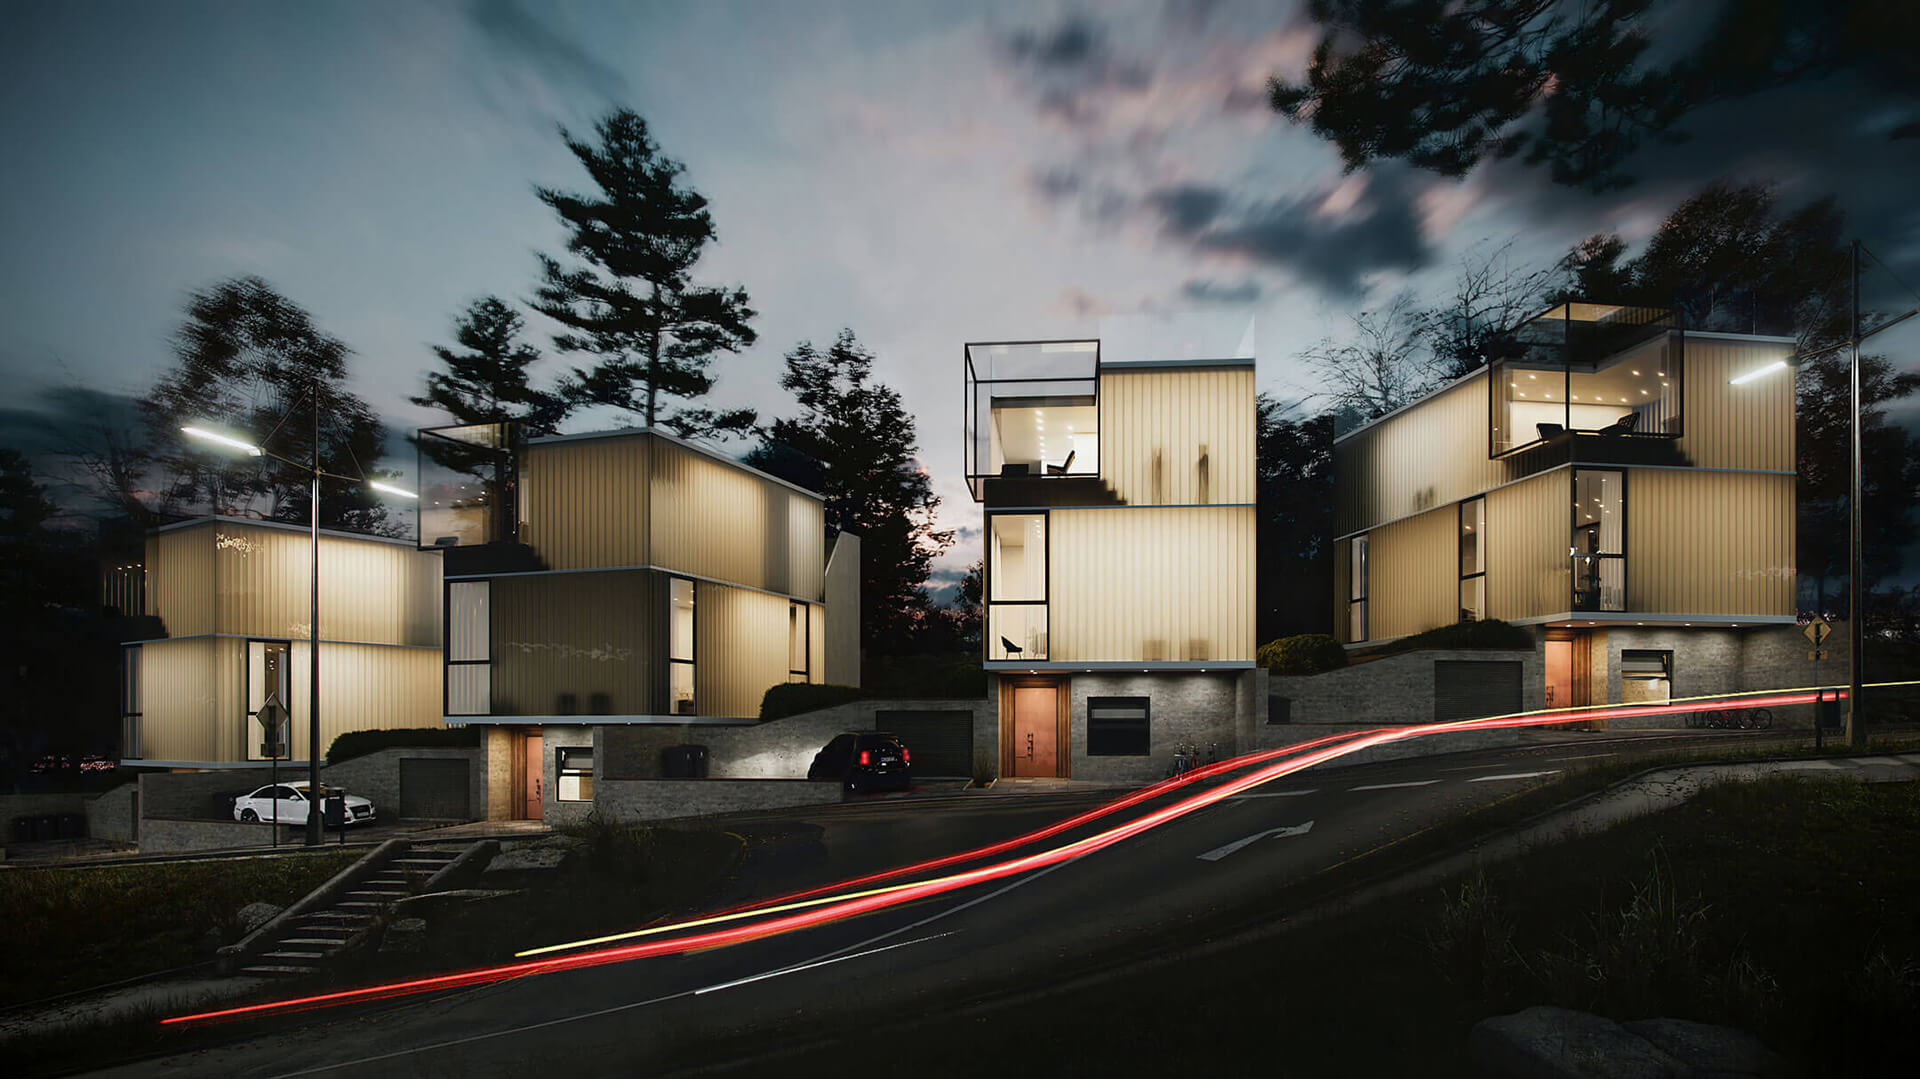 Nighttime 3D Render of an Innovative Housing Complex